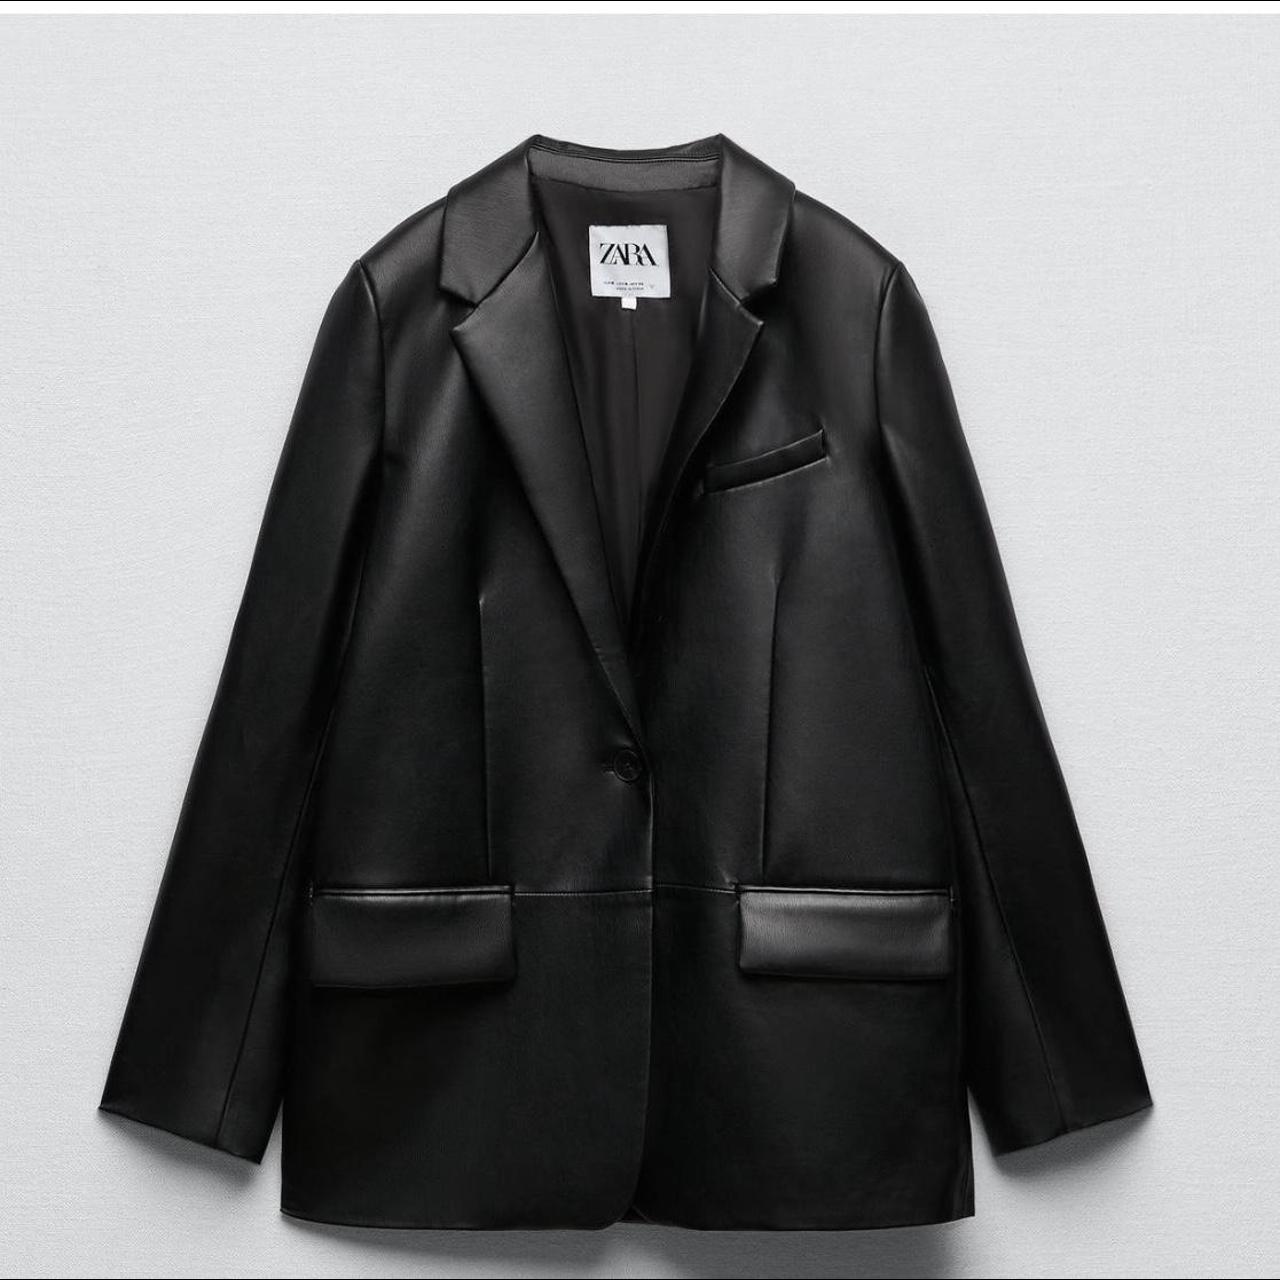 Zara faux leather black blazer XS (size 6-8), worn... - Depop